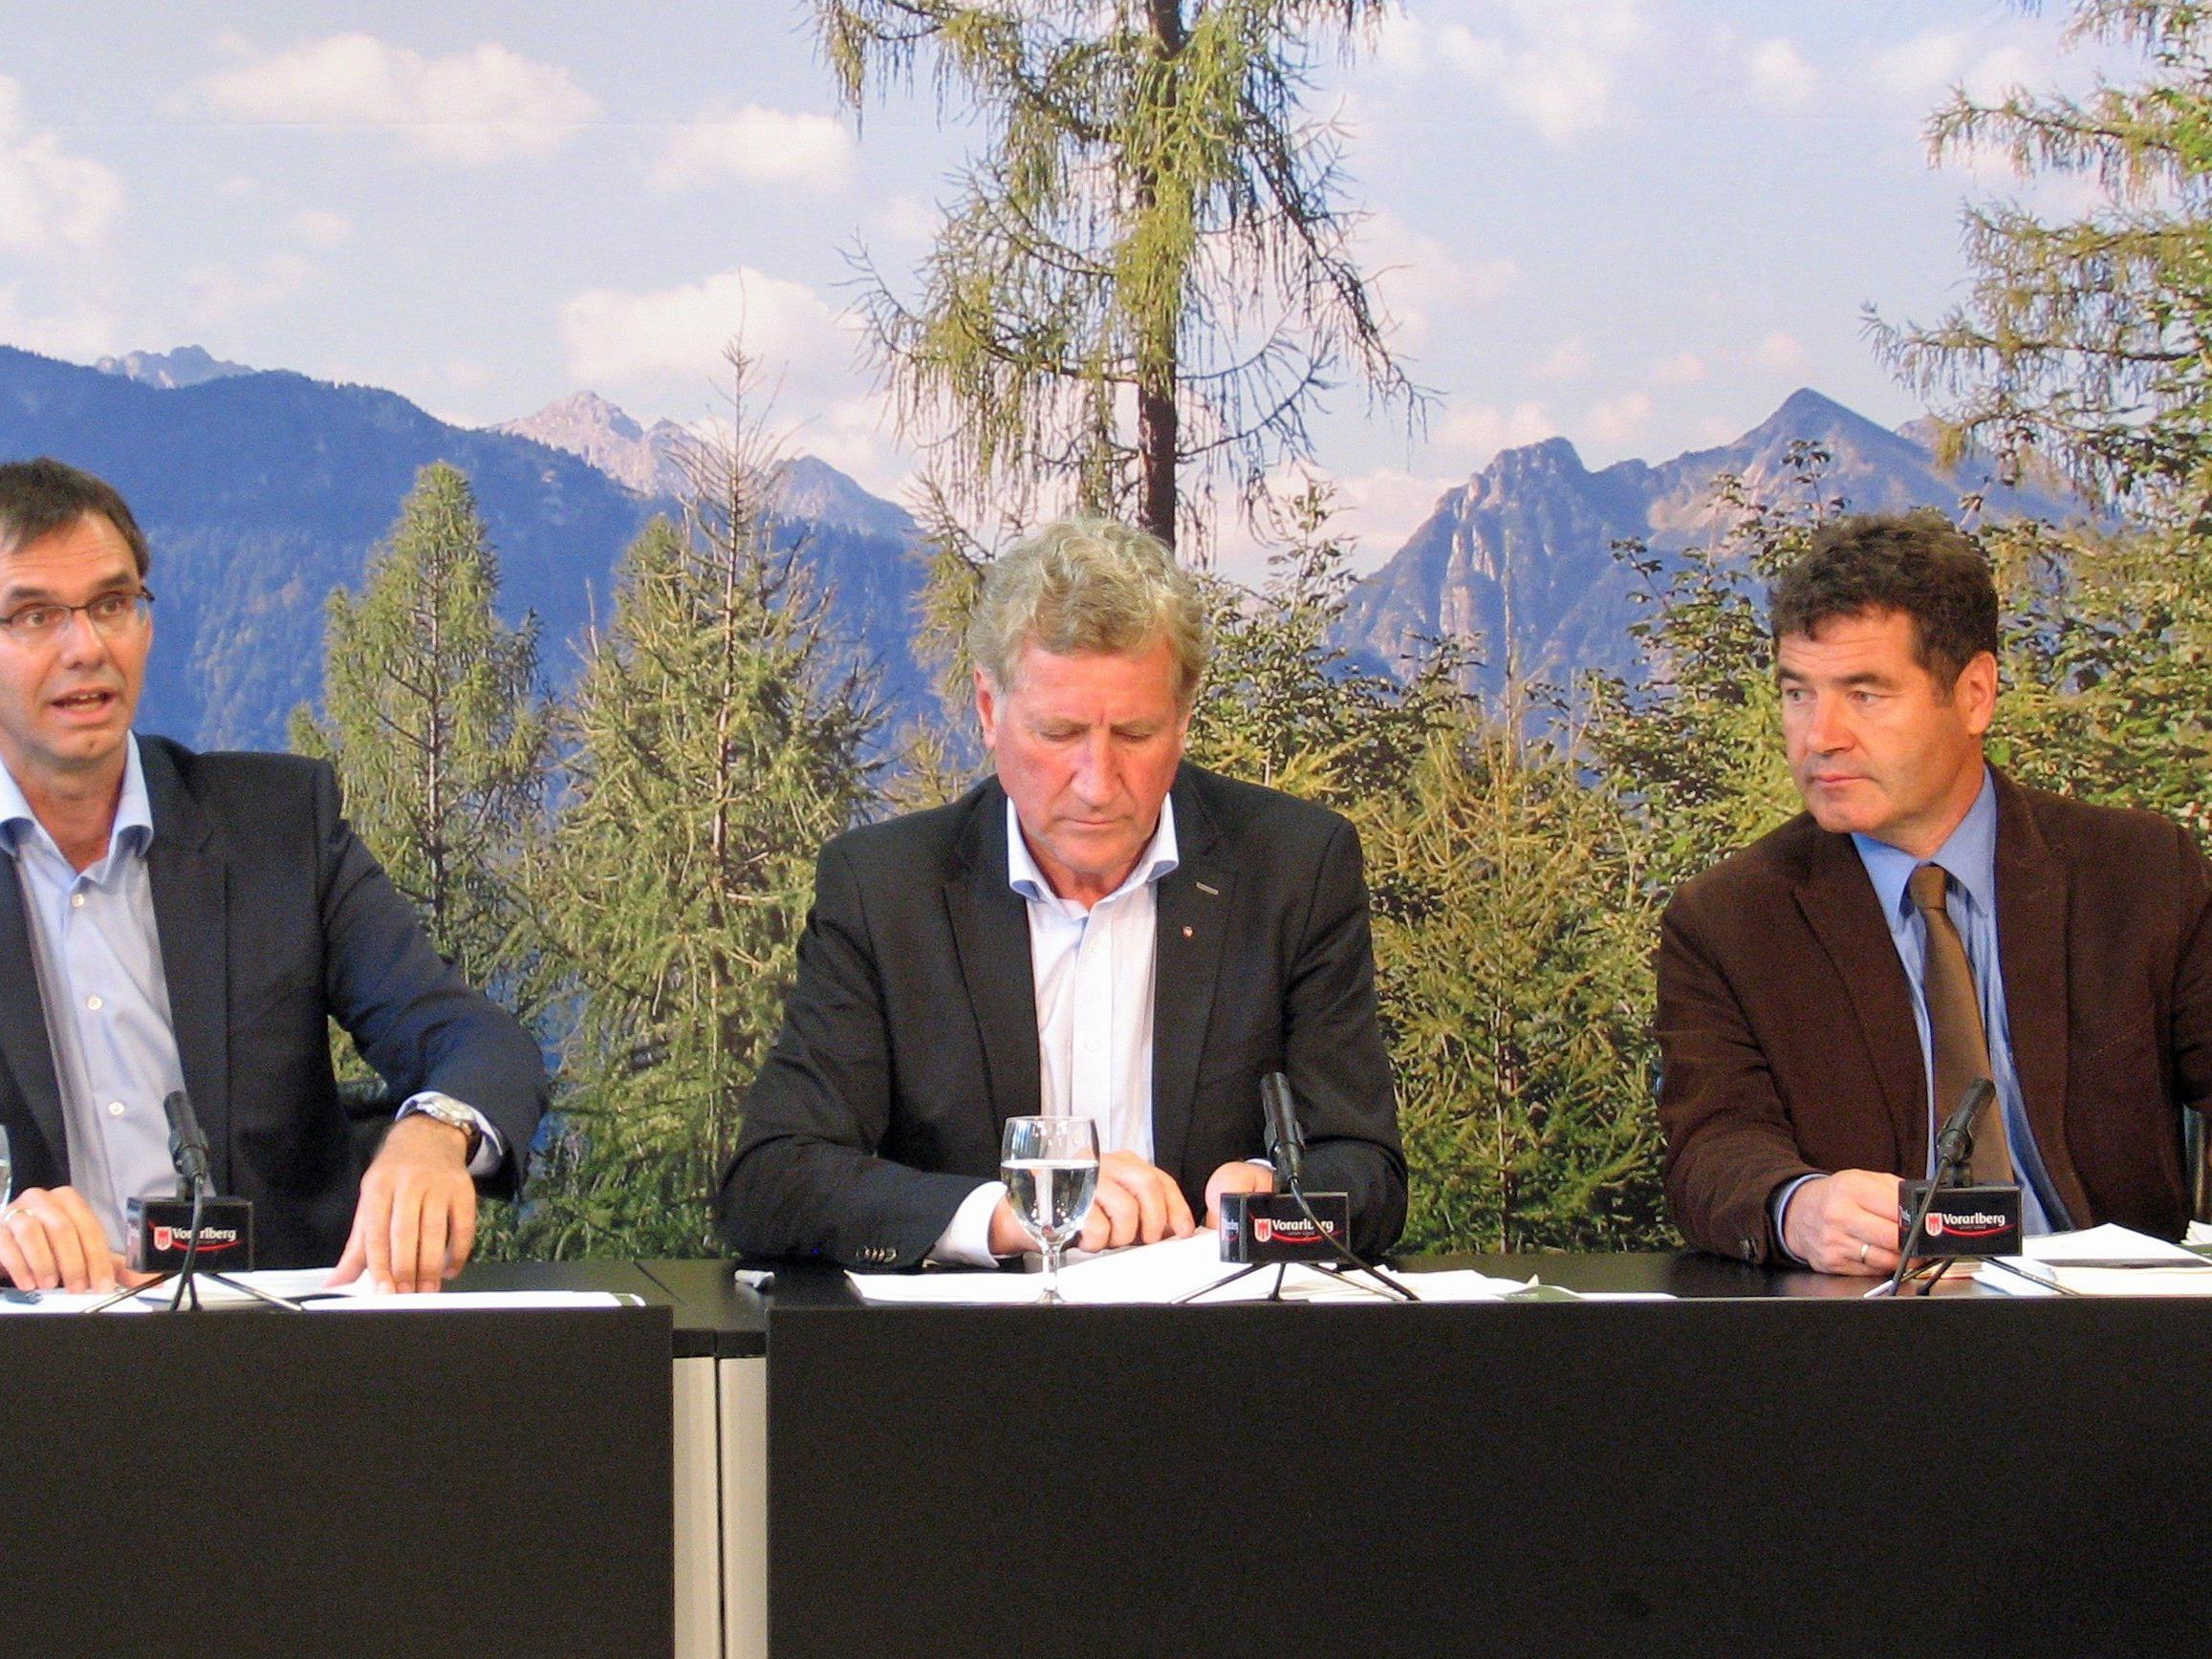 Landeshauptmann Wallner, Landesrat Schwärzler und Forstexperte Amann präsentierten im Pressefoyer eine Zwischenbilanz der Vorarlberger Waldstrategie